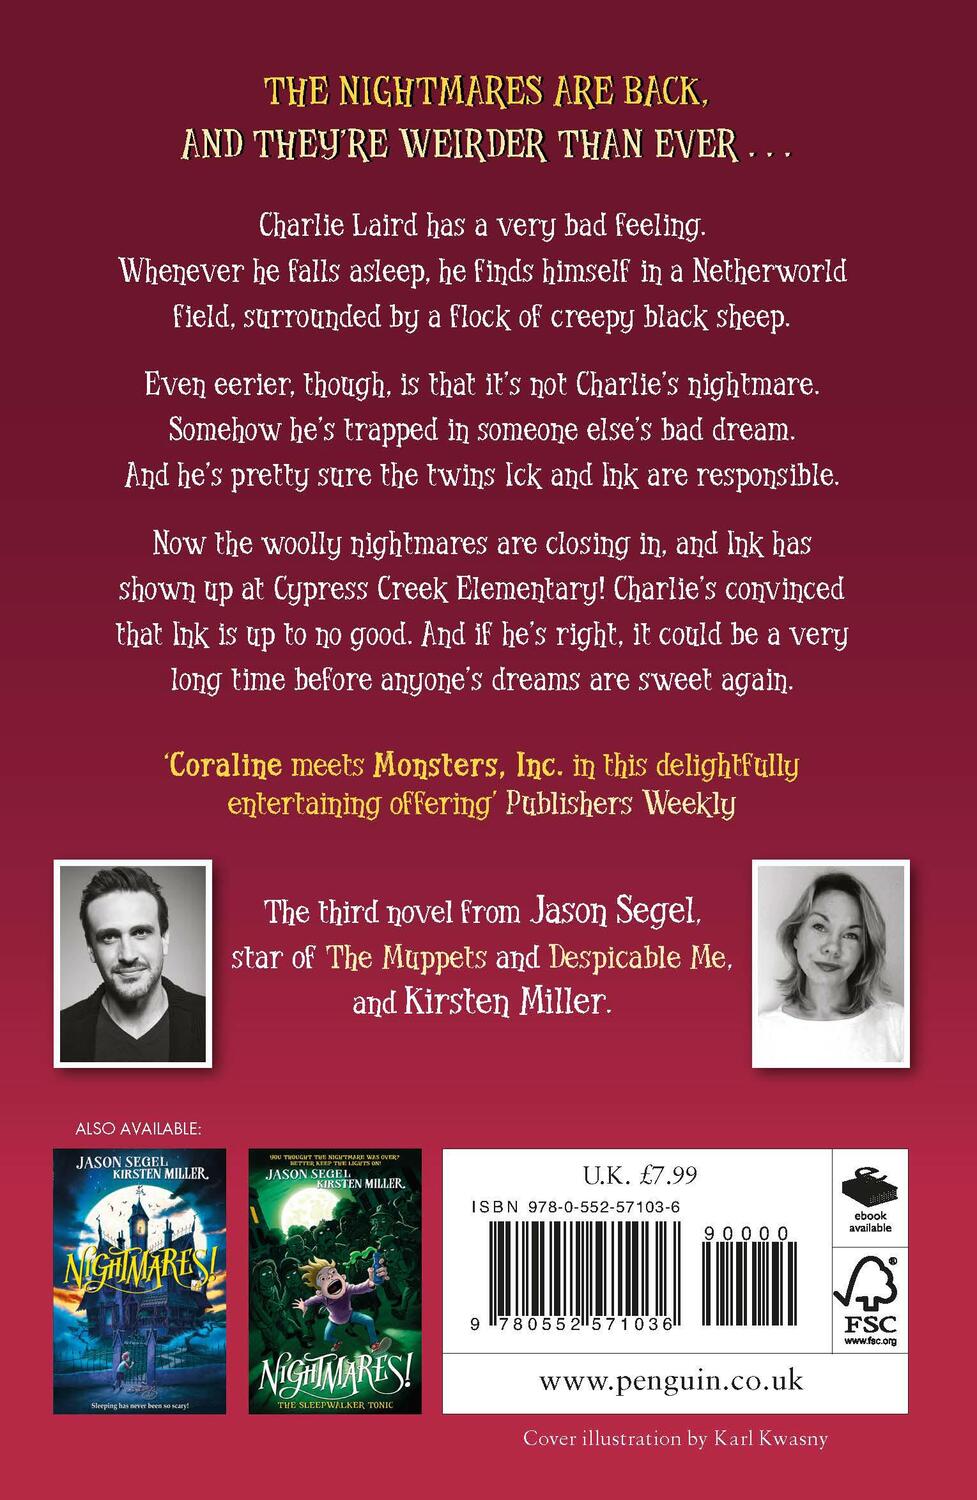 Rückseite: 9780552571036 | Nightmares! The Lost Lullaby | Jason Segel (u. a.) | Taschenbuch